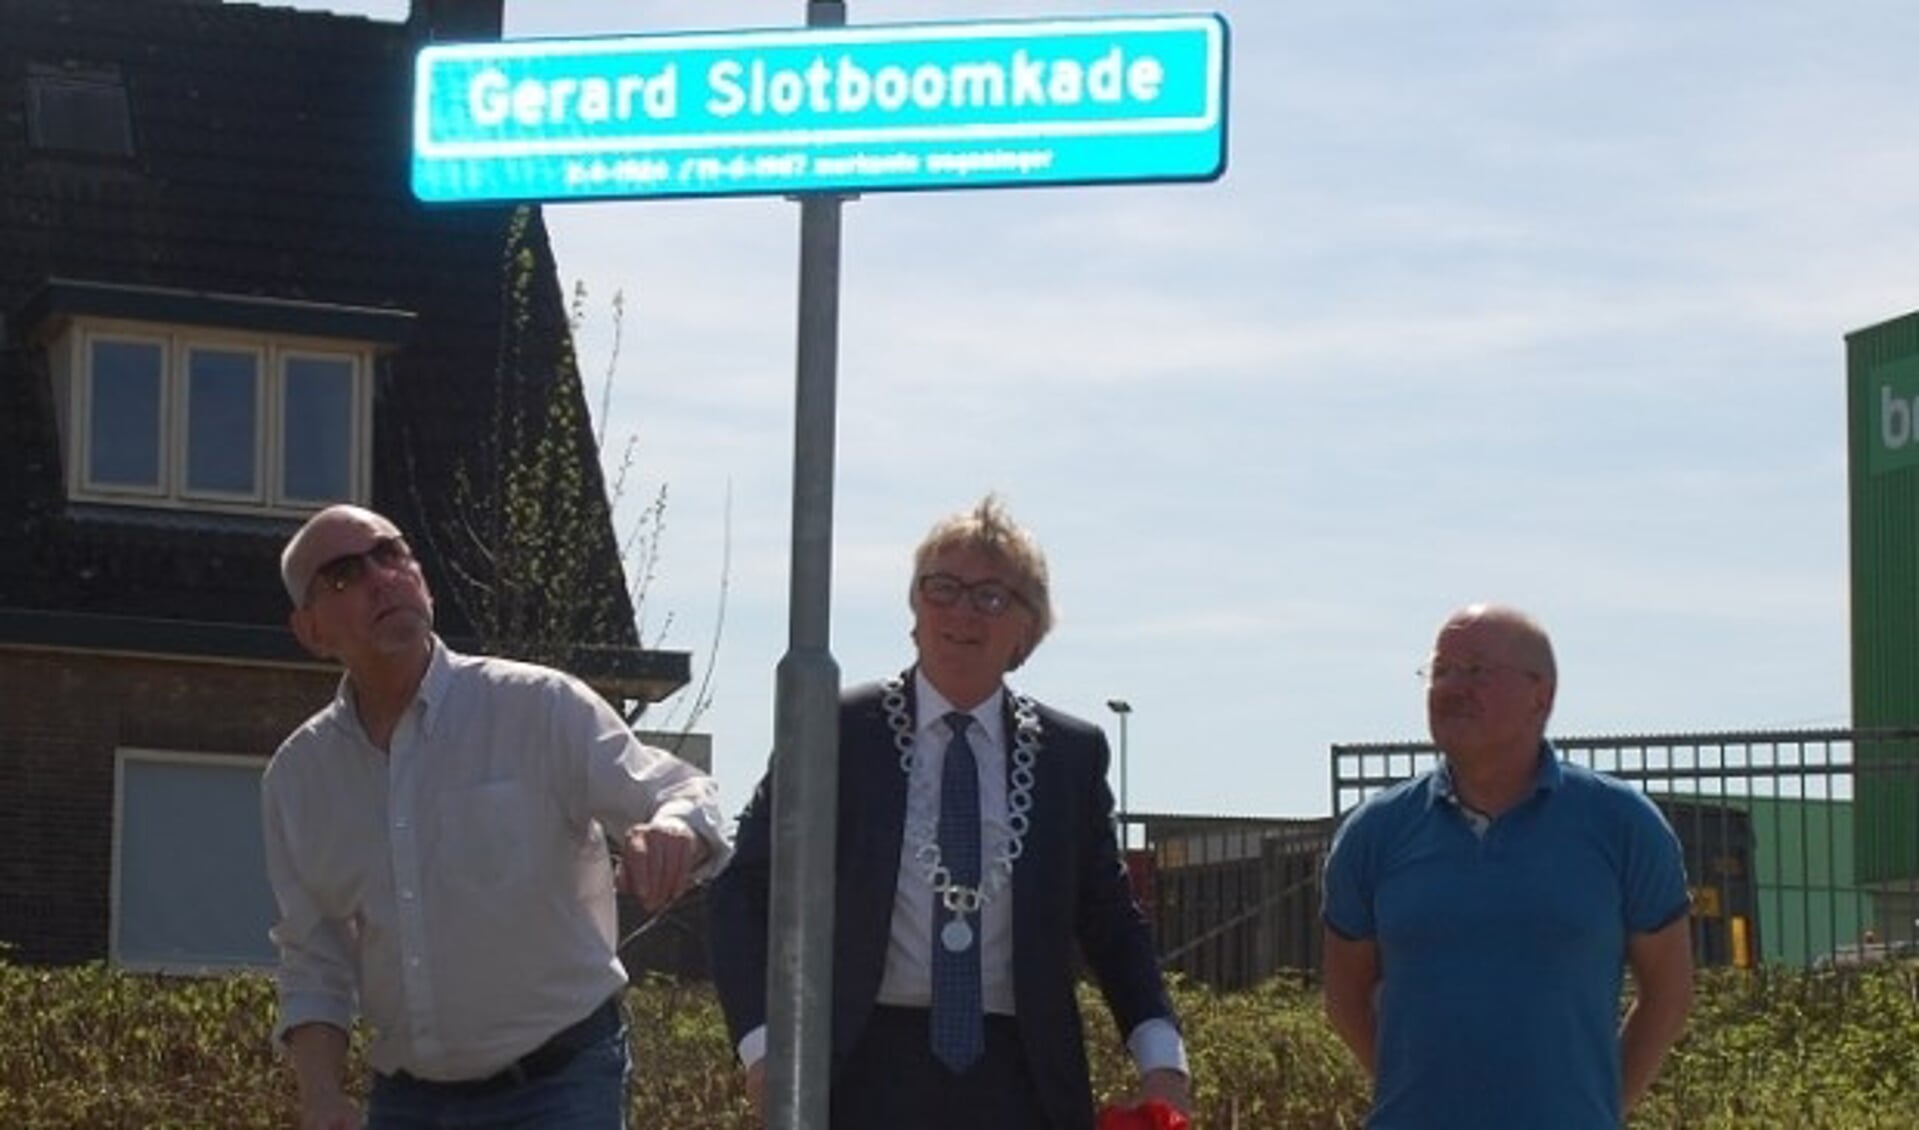 Burgemeester Van Rumund onthulde vorige week samen met twee familieleden van Gerard Slotboom het nieuwe straatnaambord 'De Gerard Slotboomkade' (foto: Henk van de Beek, gemeente Wageningen)